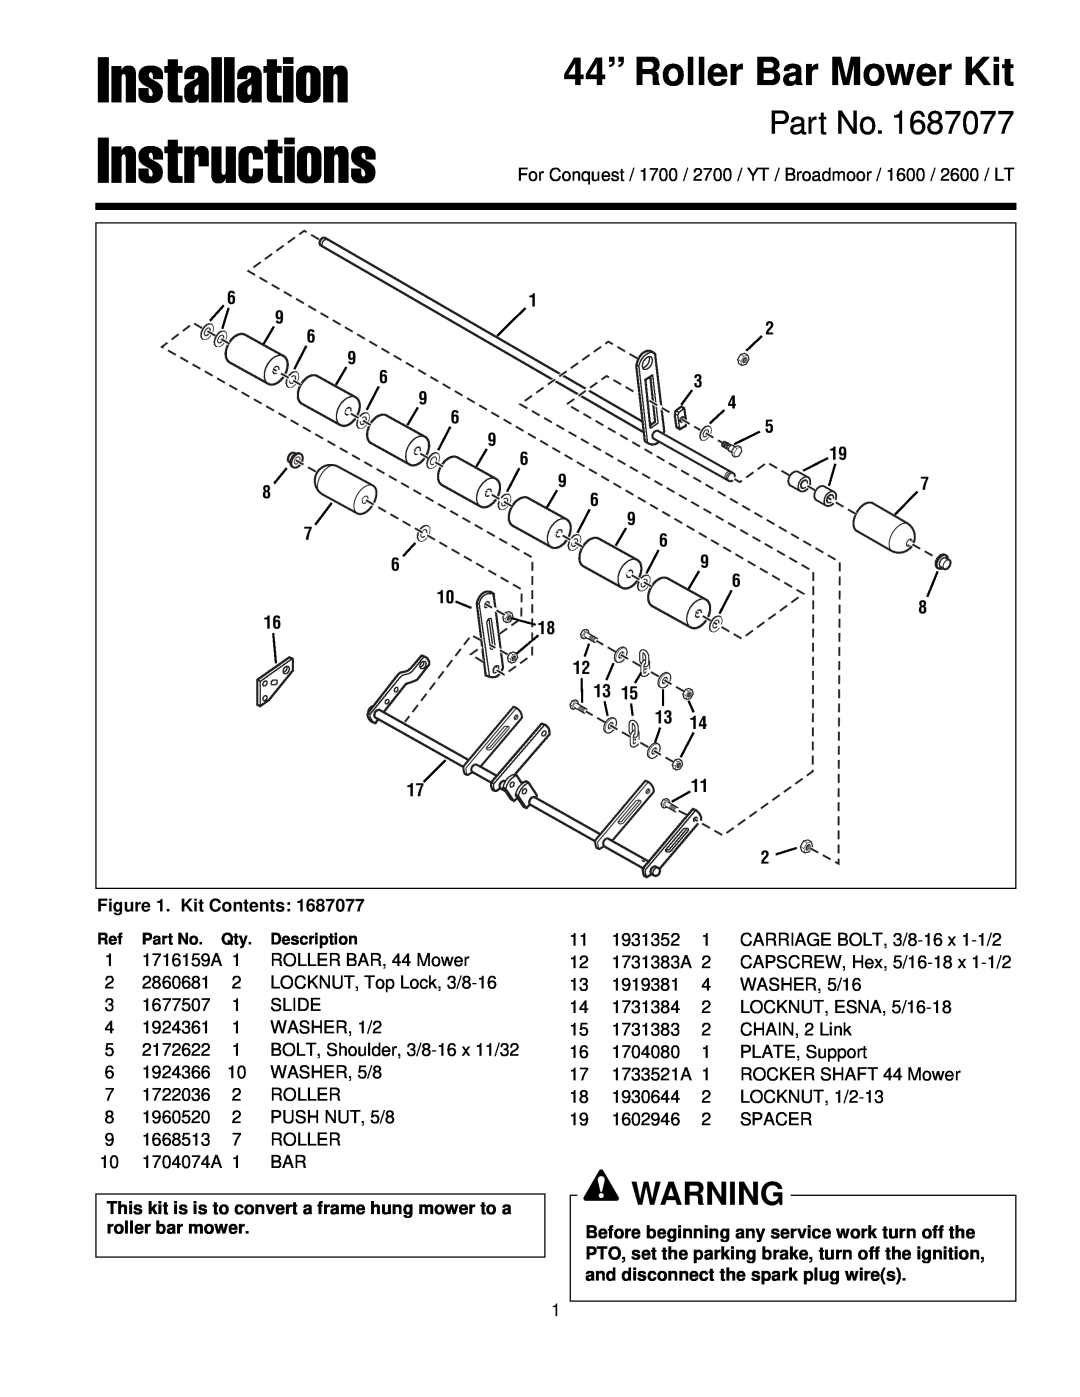 Briggs & Stratton 1687077 installation instructions Installation, Instructions, 44” Roller Bar Mower Kit 